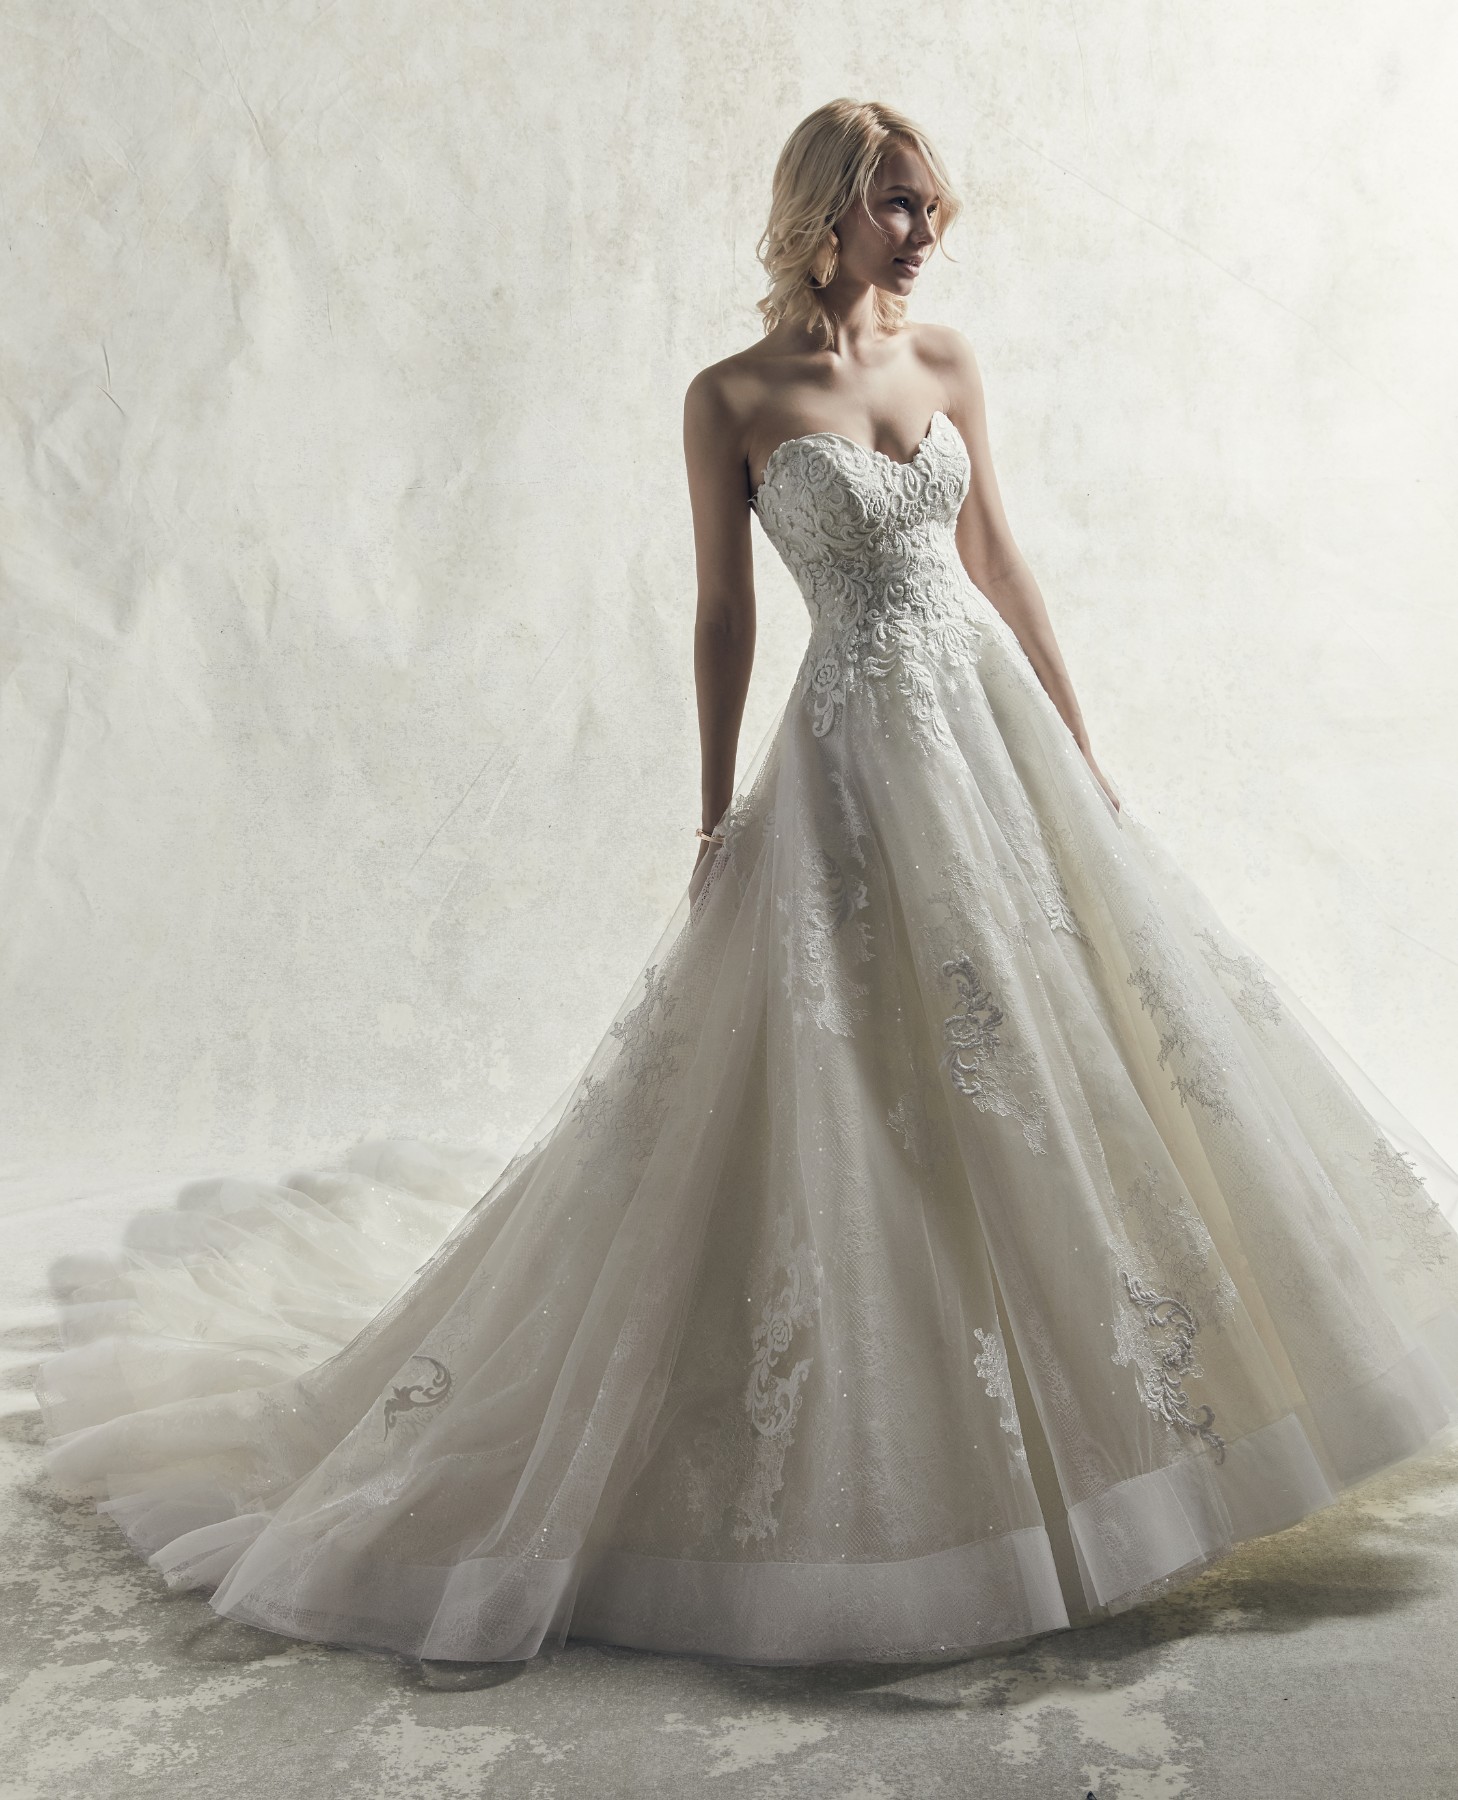 Pormenores de renda bordados em cascada sobre as camadas de tule neste elegante vestido de noiva com corte de princesa. 